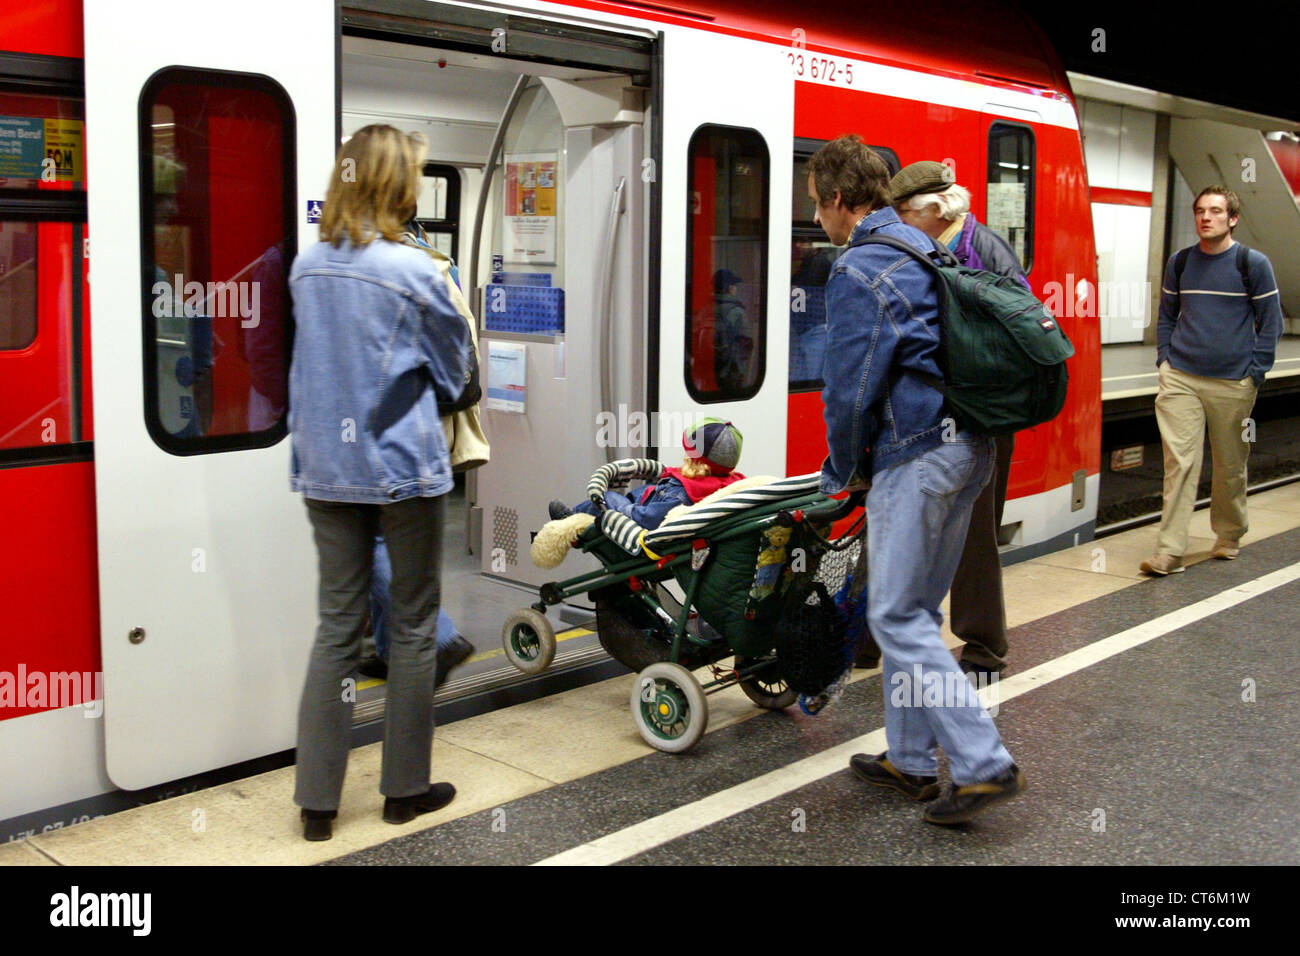 Muenchen, les passagers du train lors de l'embarquement Banque D'Images